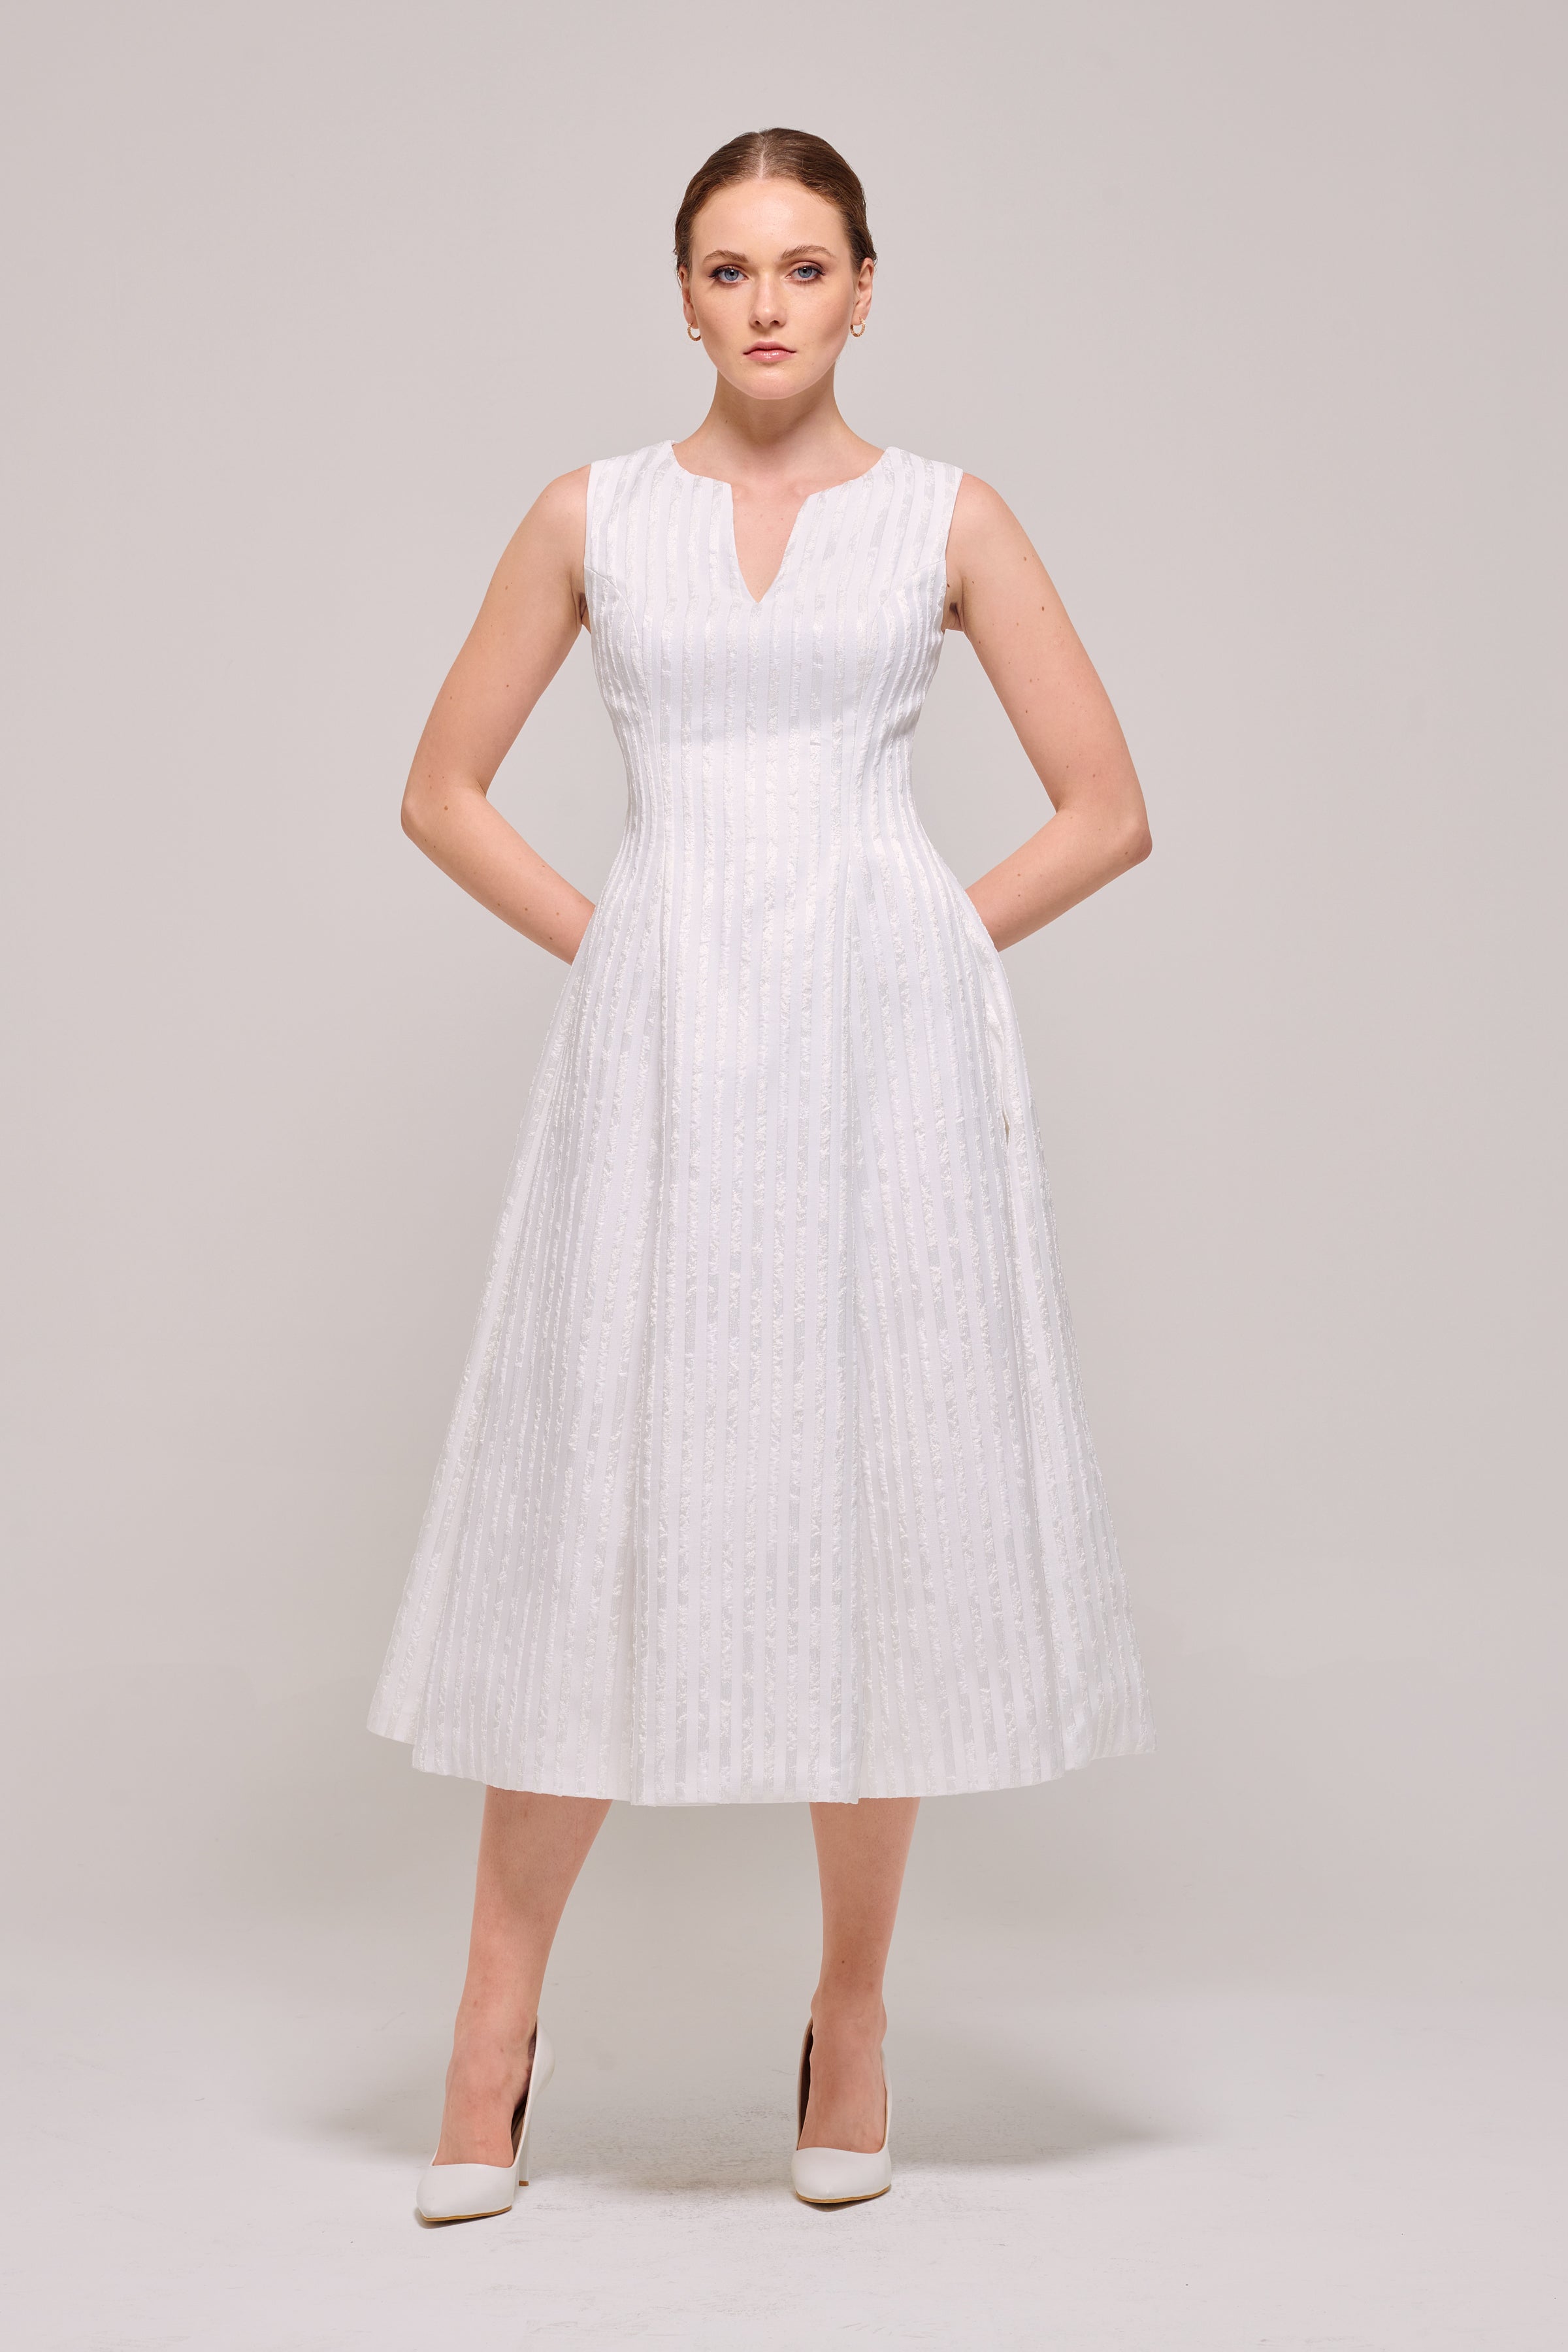 V-Neck Sleeveless Midi Length White Dress